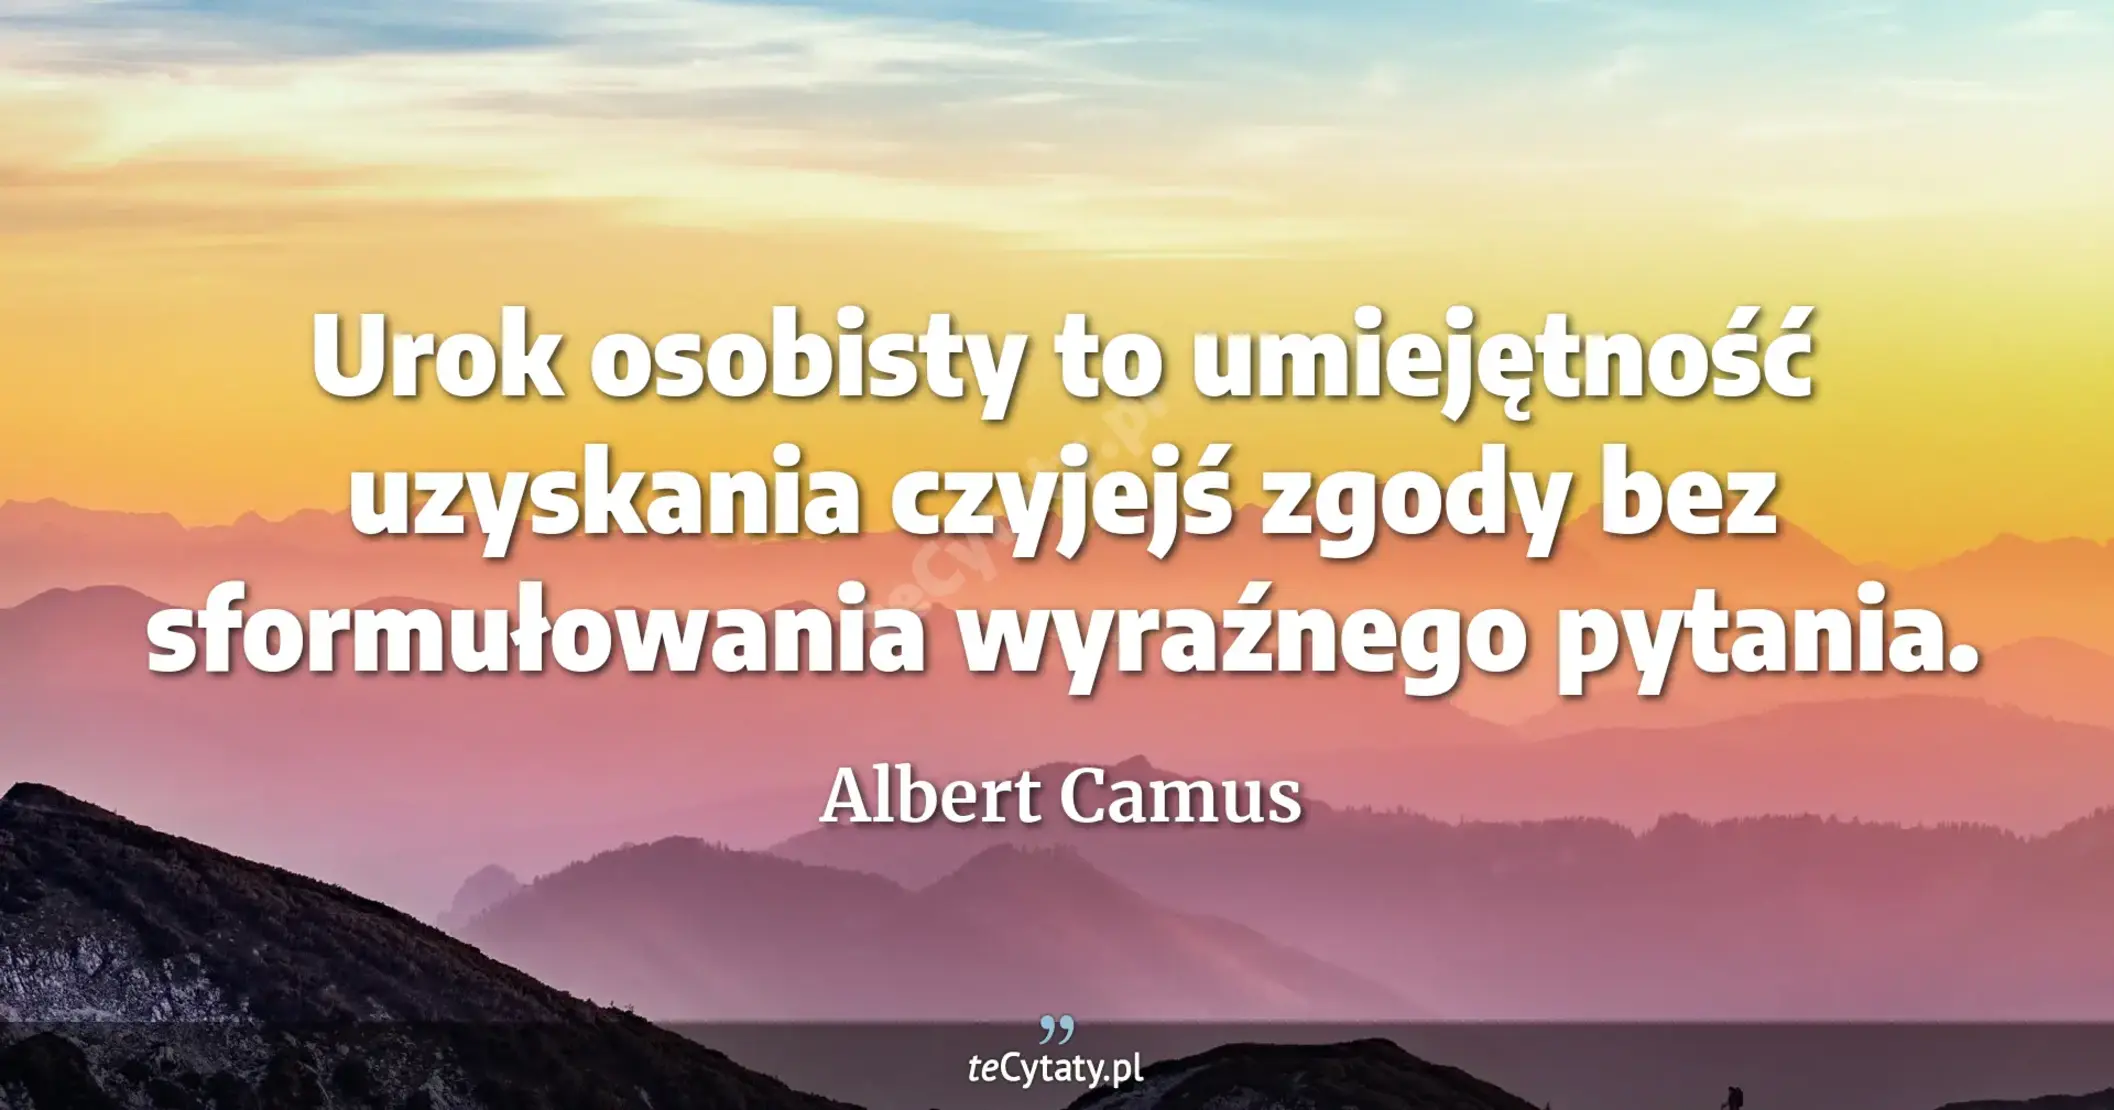 Urok osobisty to umiejętność uzyskania czyjejś zgody bez sformułowania wyraźnego pytania. - Albert Camus